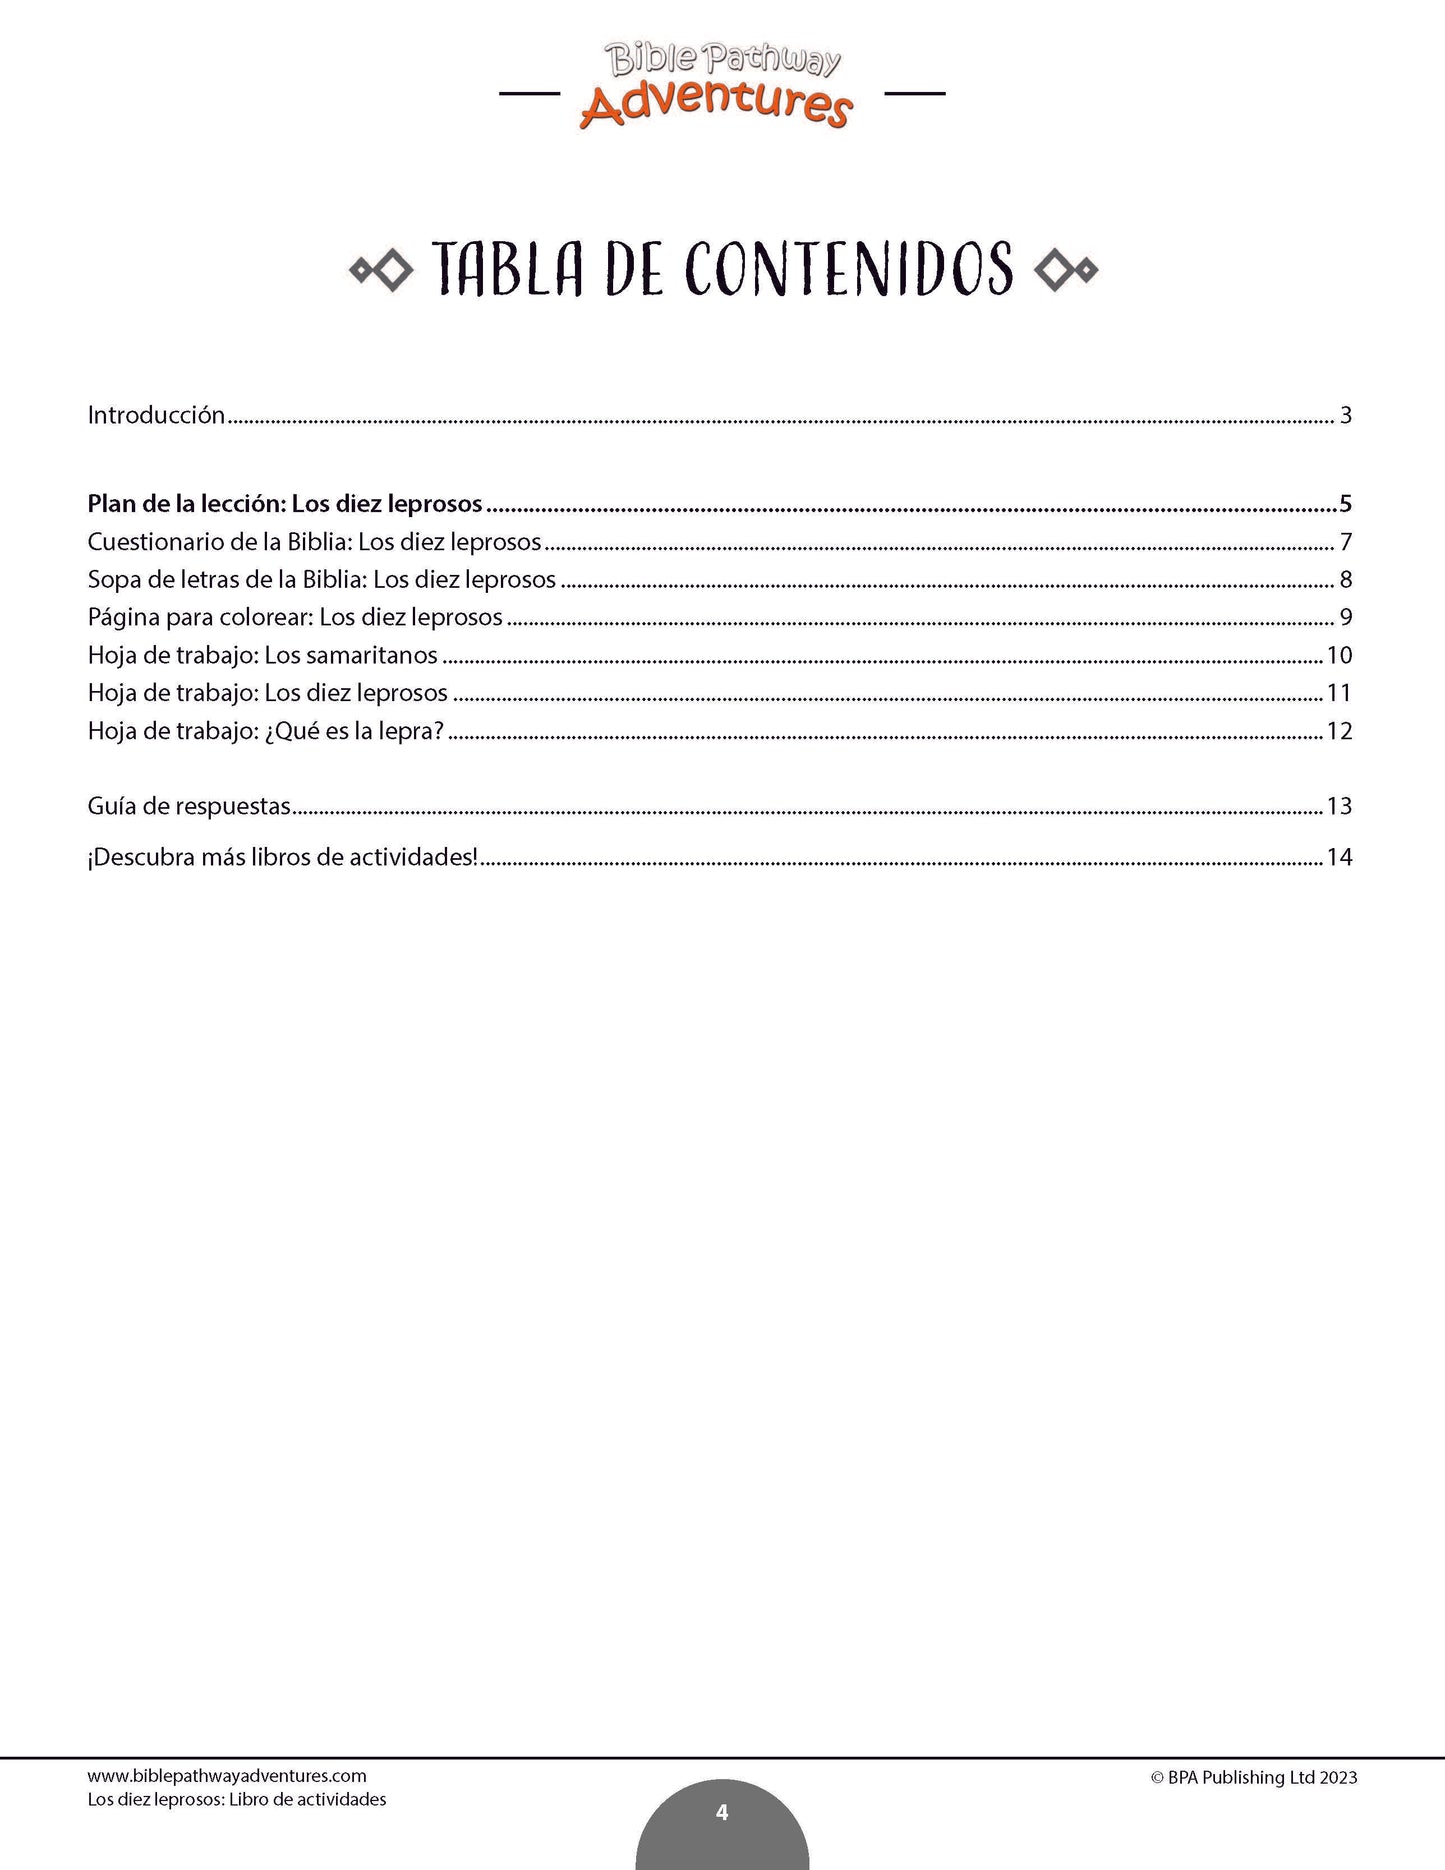 Los diez leprosos: Libro de actividades (PDF)